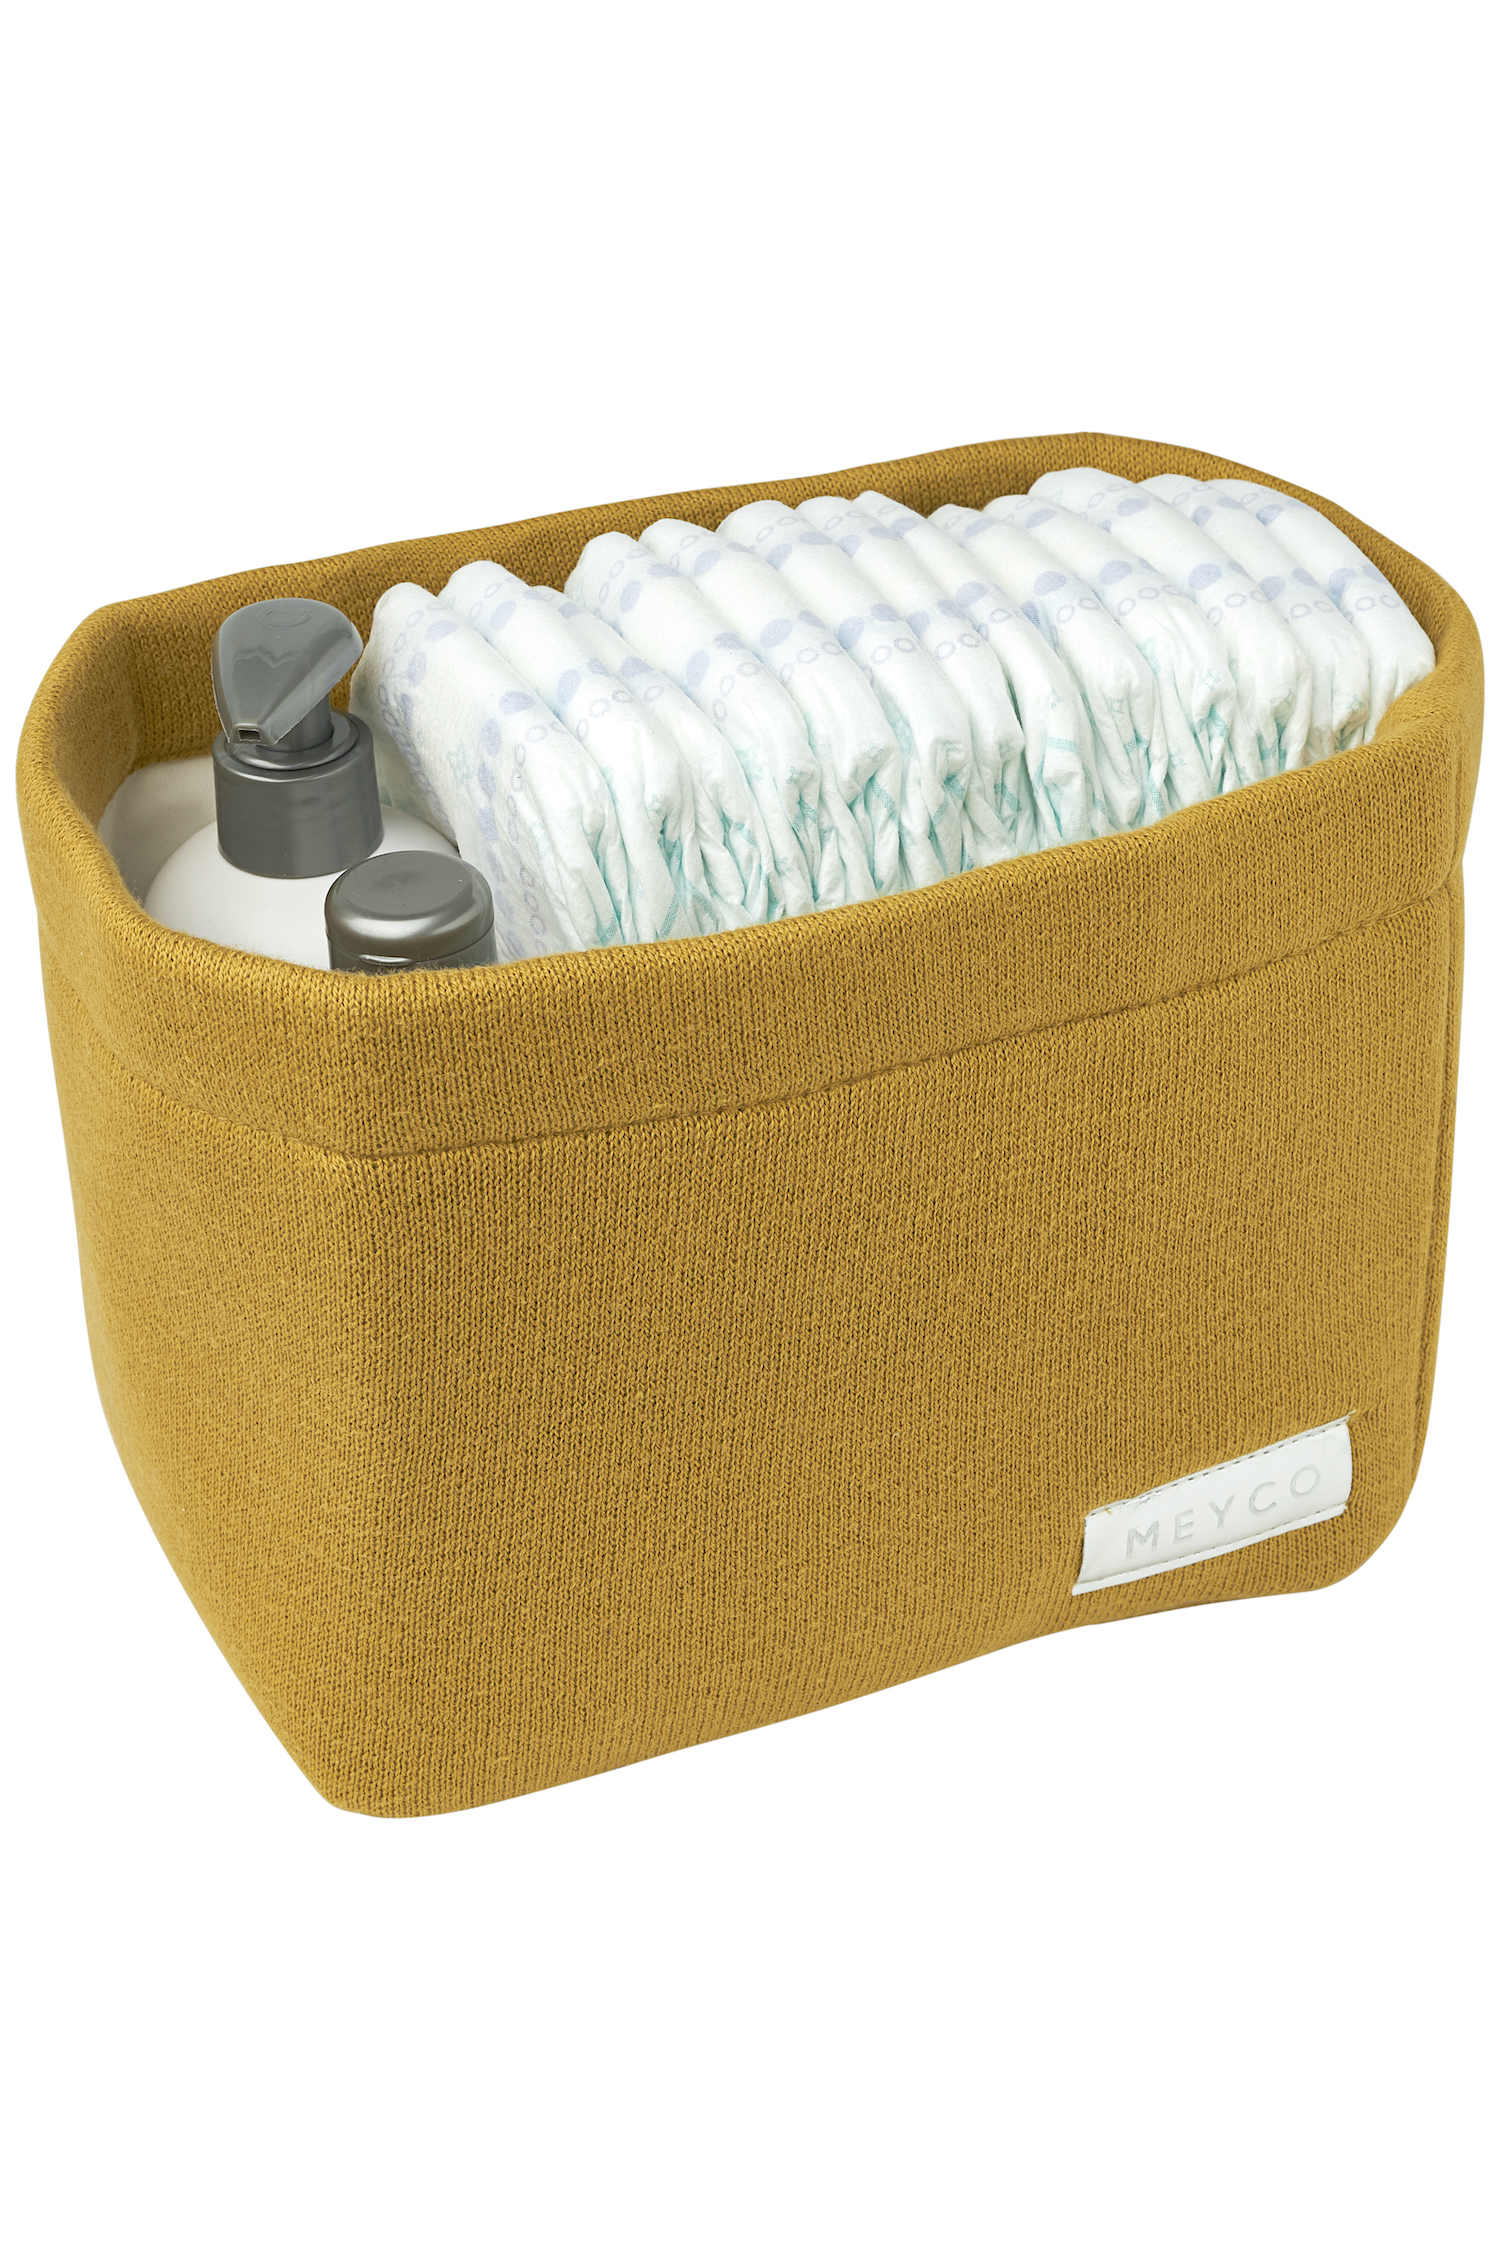 Storage Basket Medium Knit Basic - Honey Gold - 26X19Xh16cm